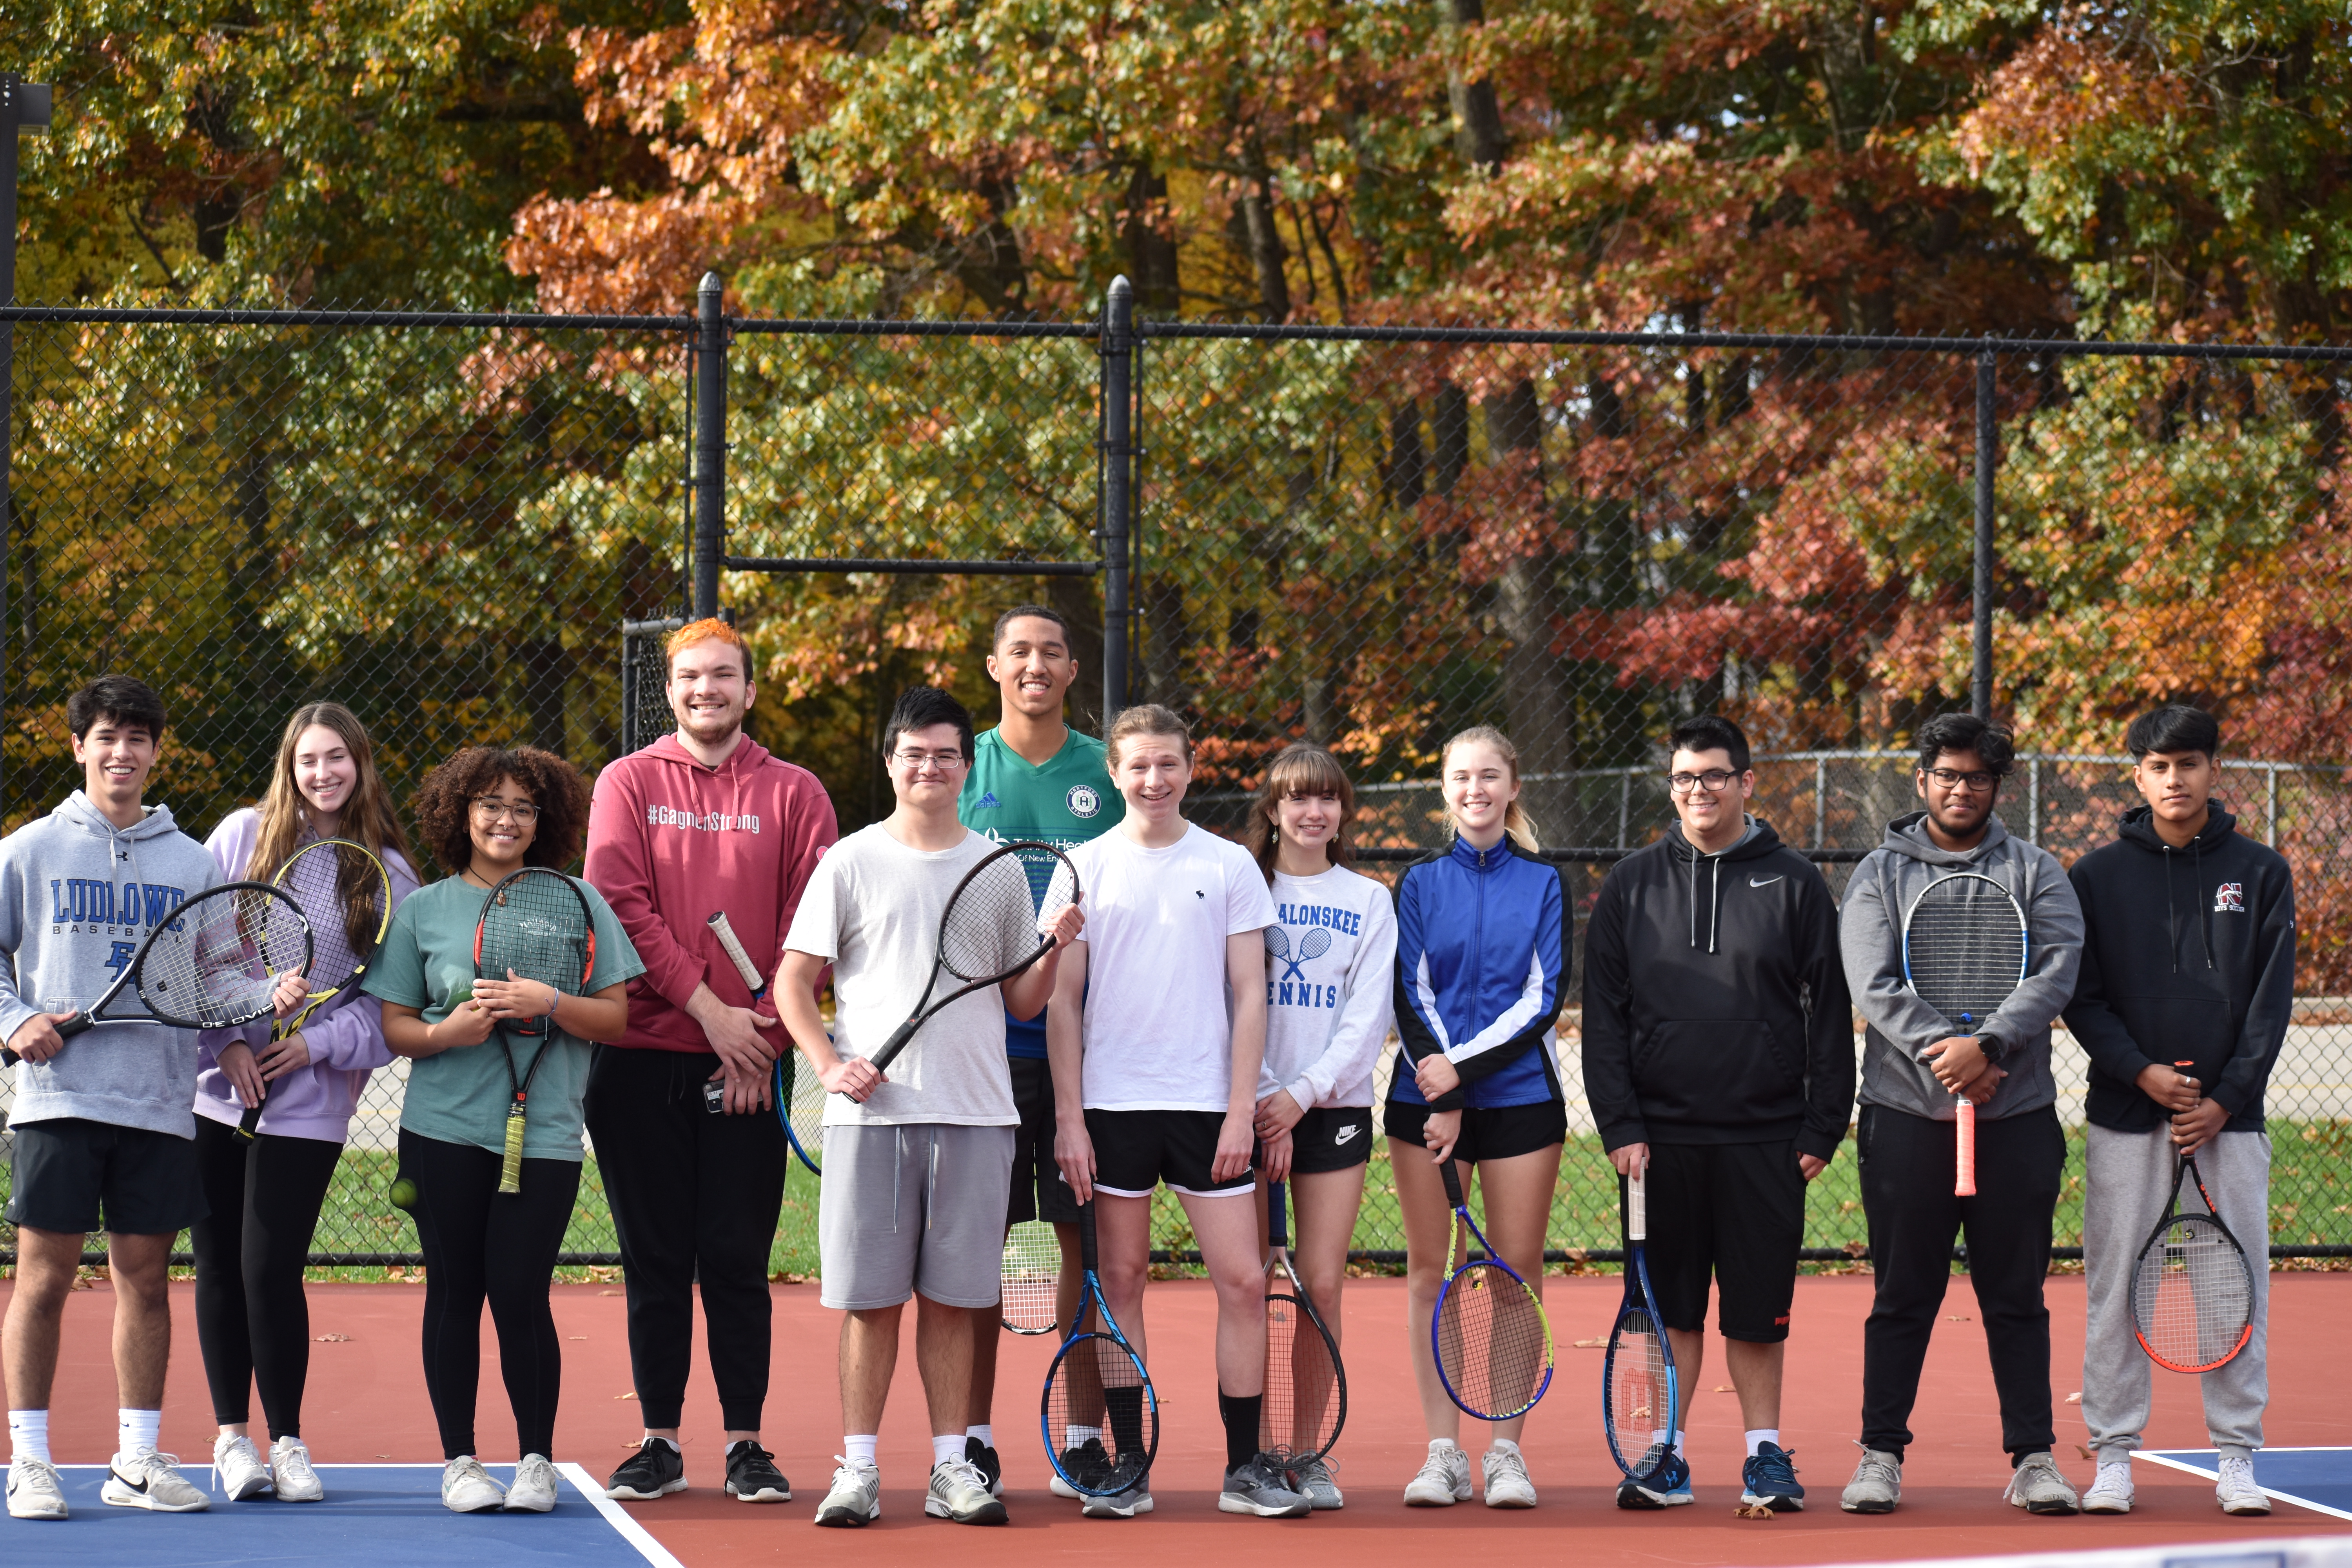 Tennis/Racquetball Club